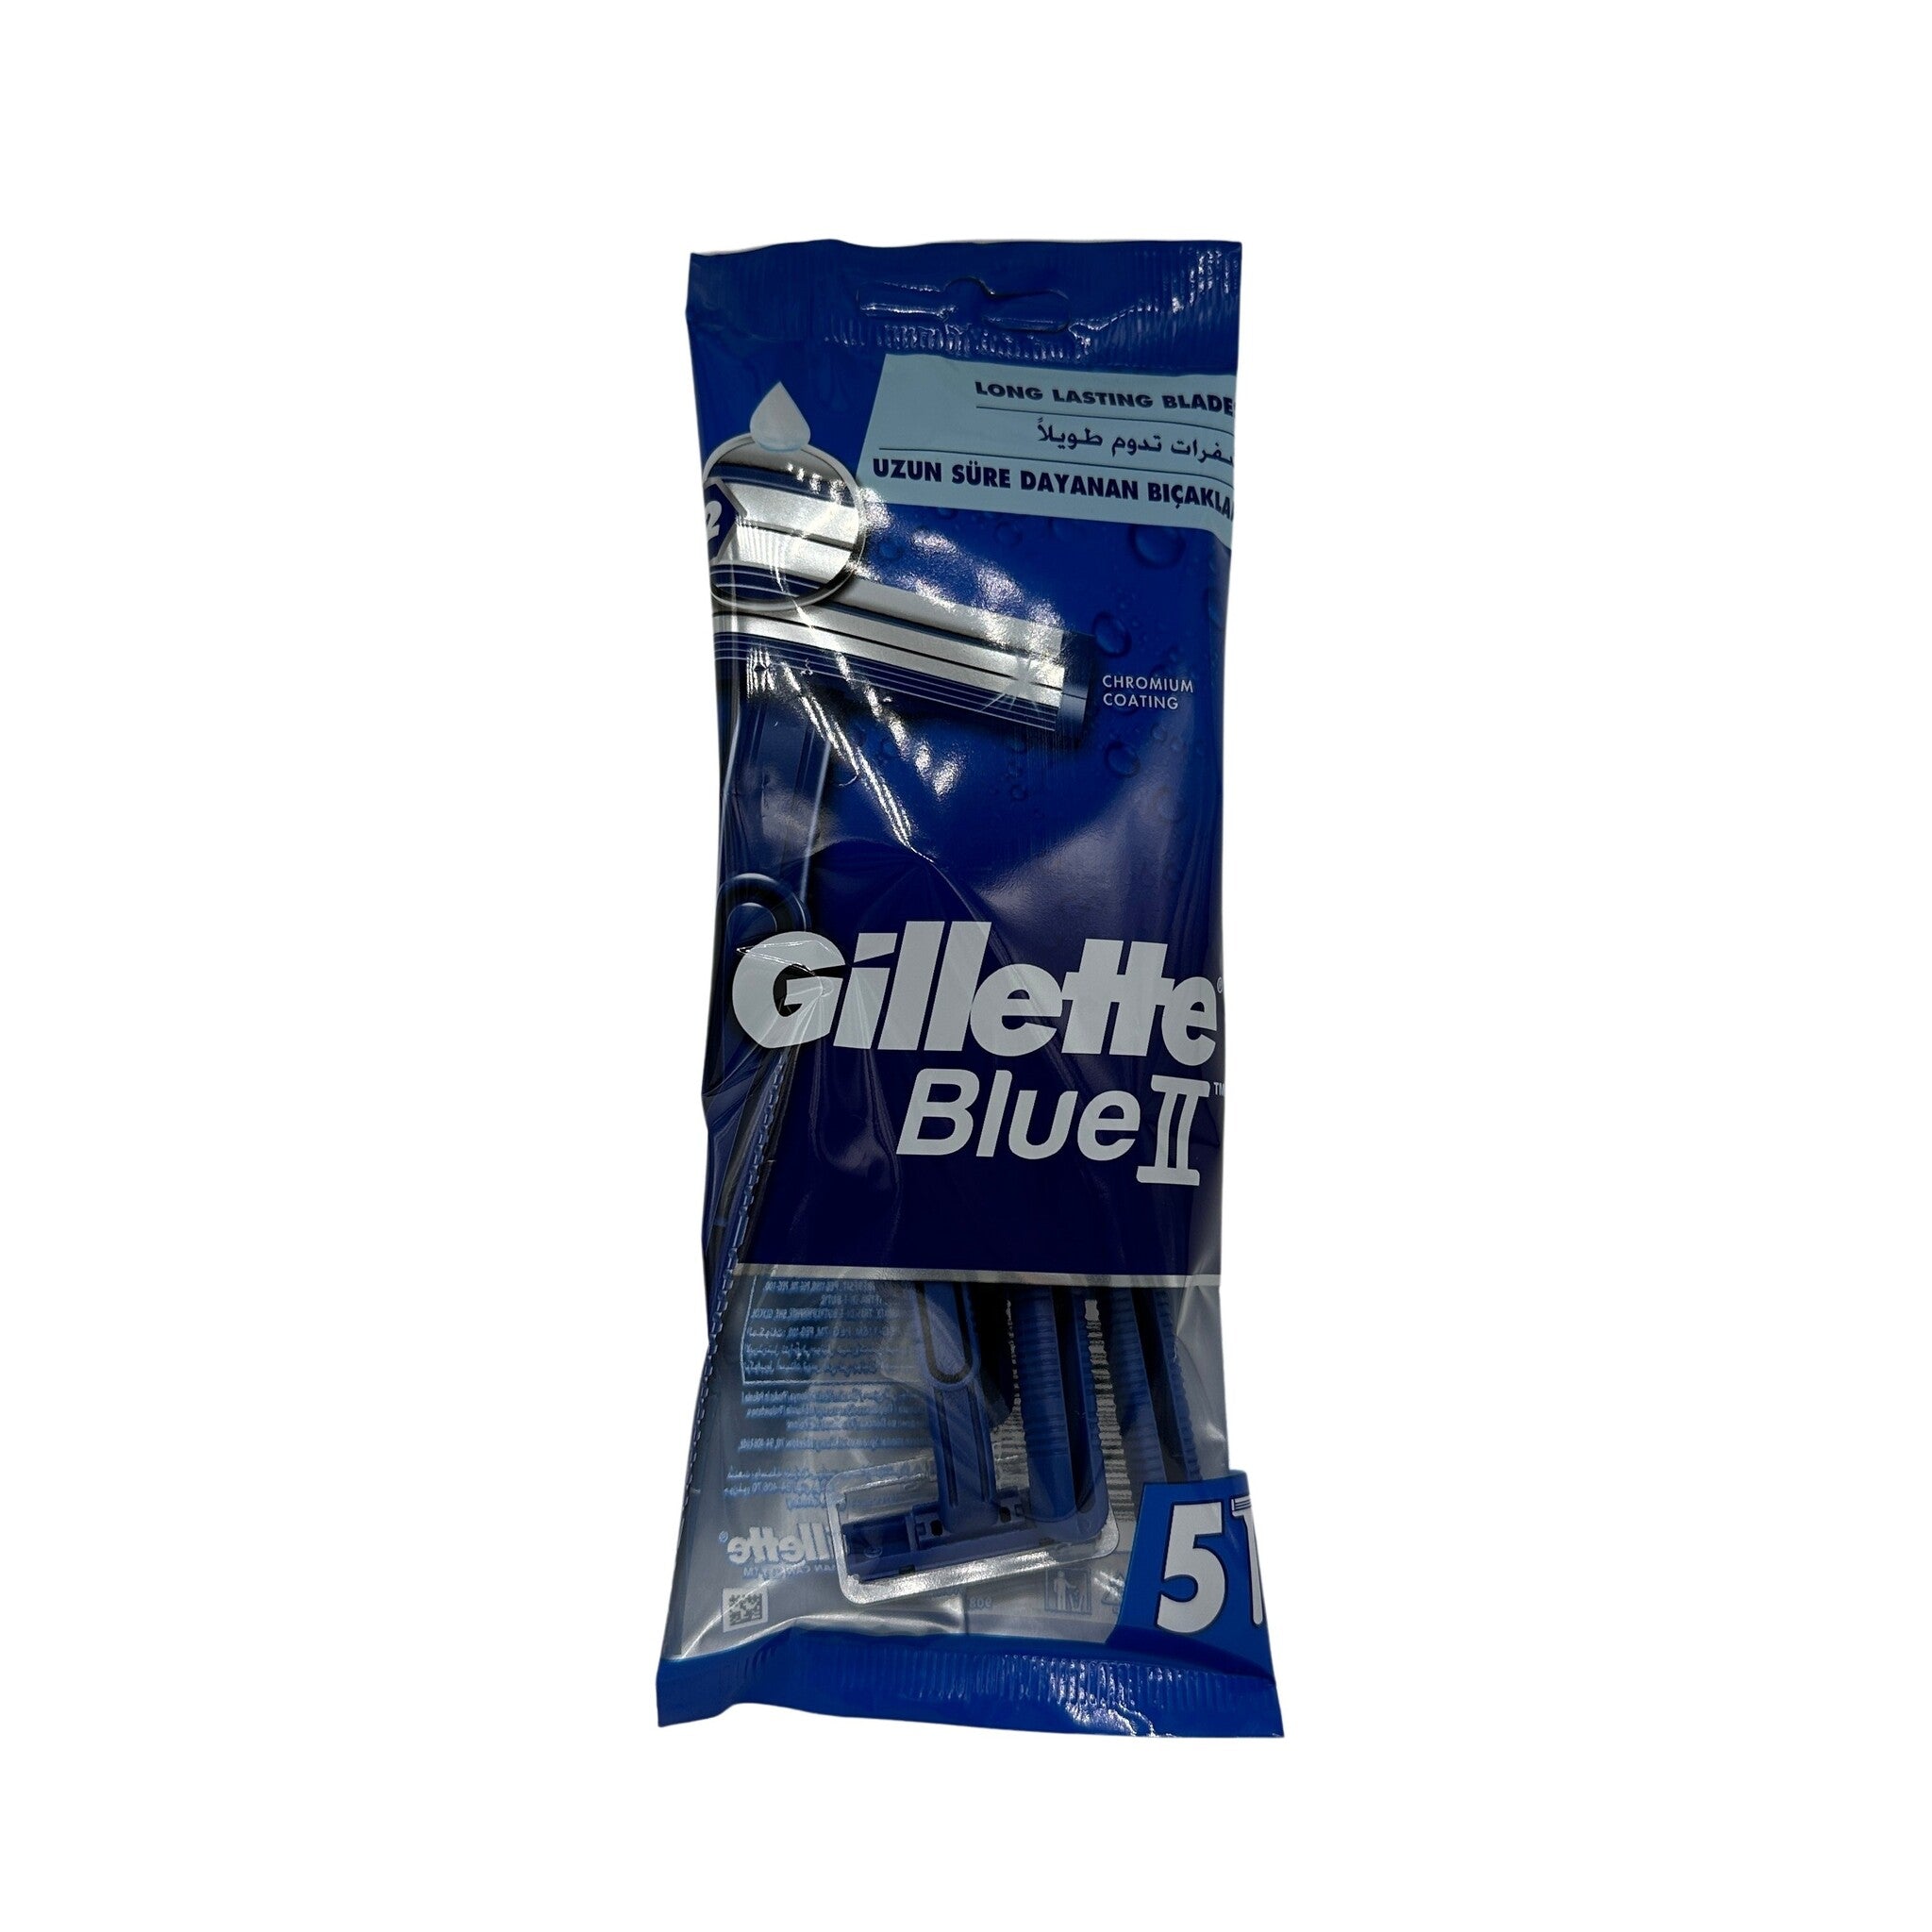 Gillette Blue 2 Plus wegwerpmesjes 5 stuks